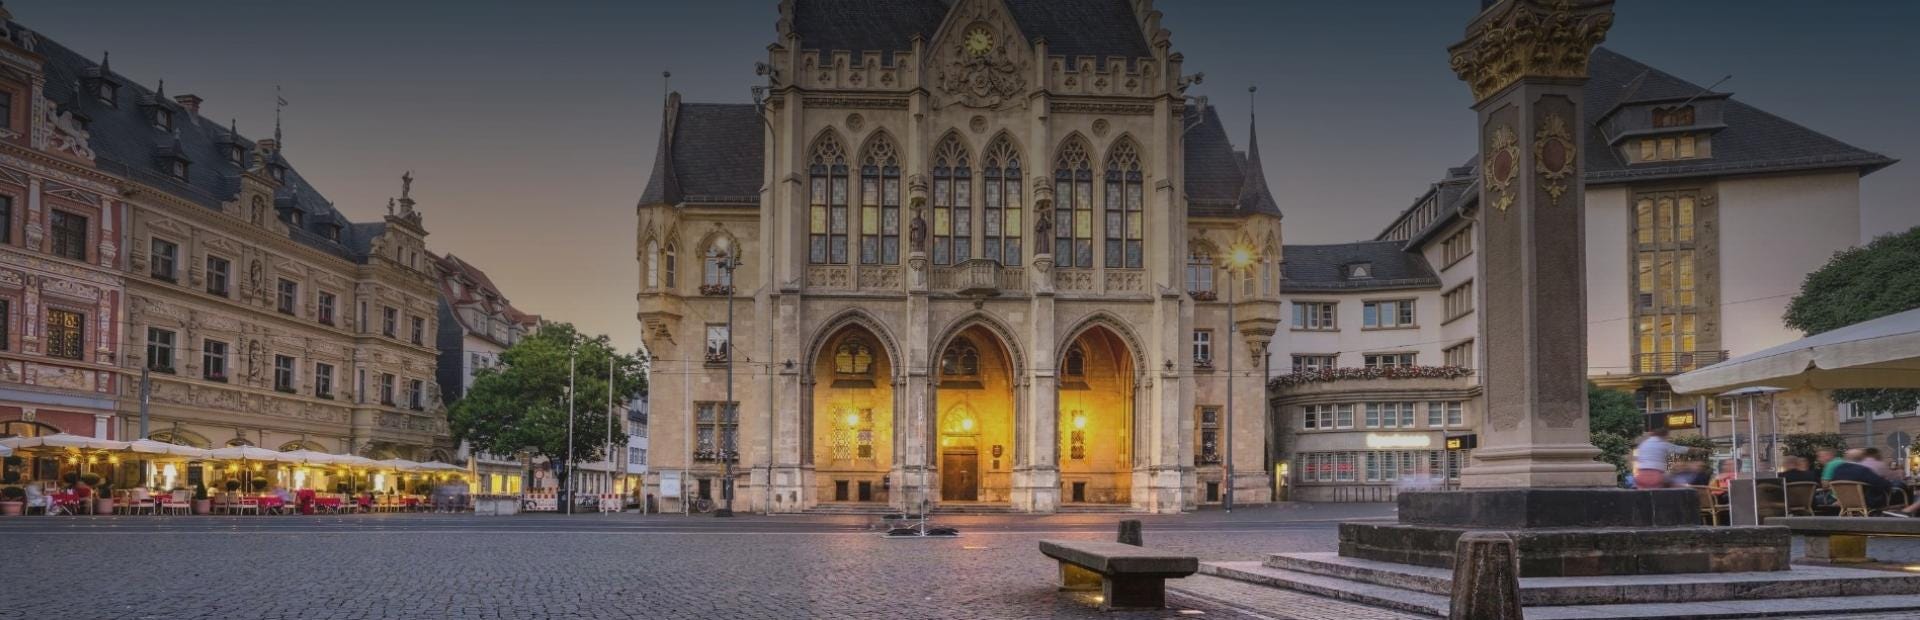 Historischer Stadtkern mit Blick auf das Erfurter Rathaus